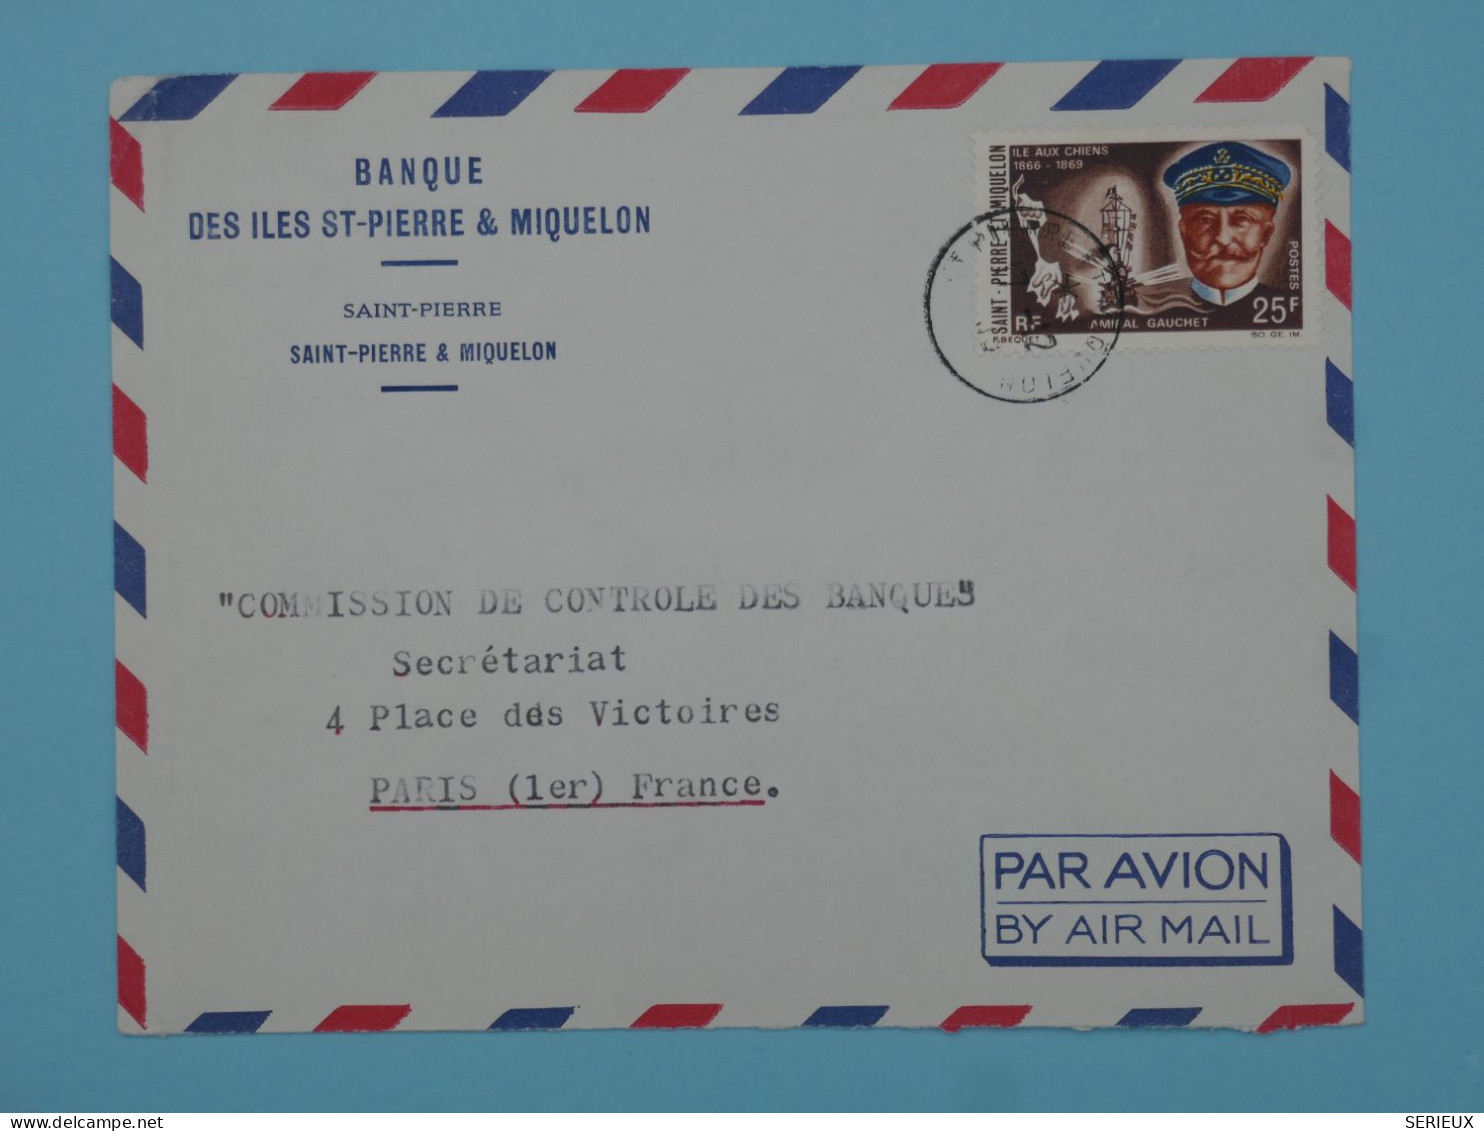 BT15  ST PIERRE & MIQUELON  BELLE LETTRE  1966 BANQUE  PAR AVION A PARIS  FRANCE ++AFF. PLAISANT +++ - Lettres & Documents